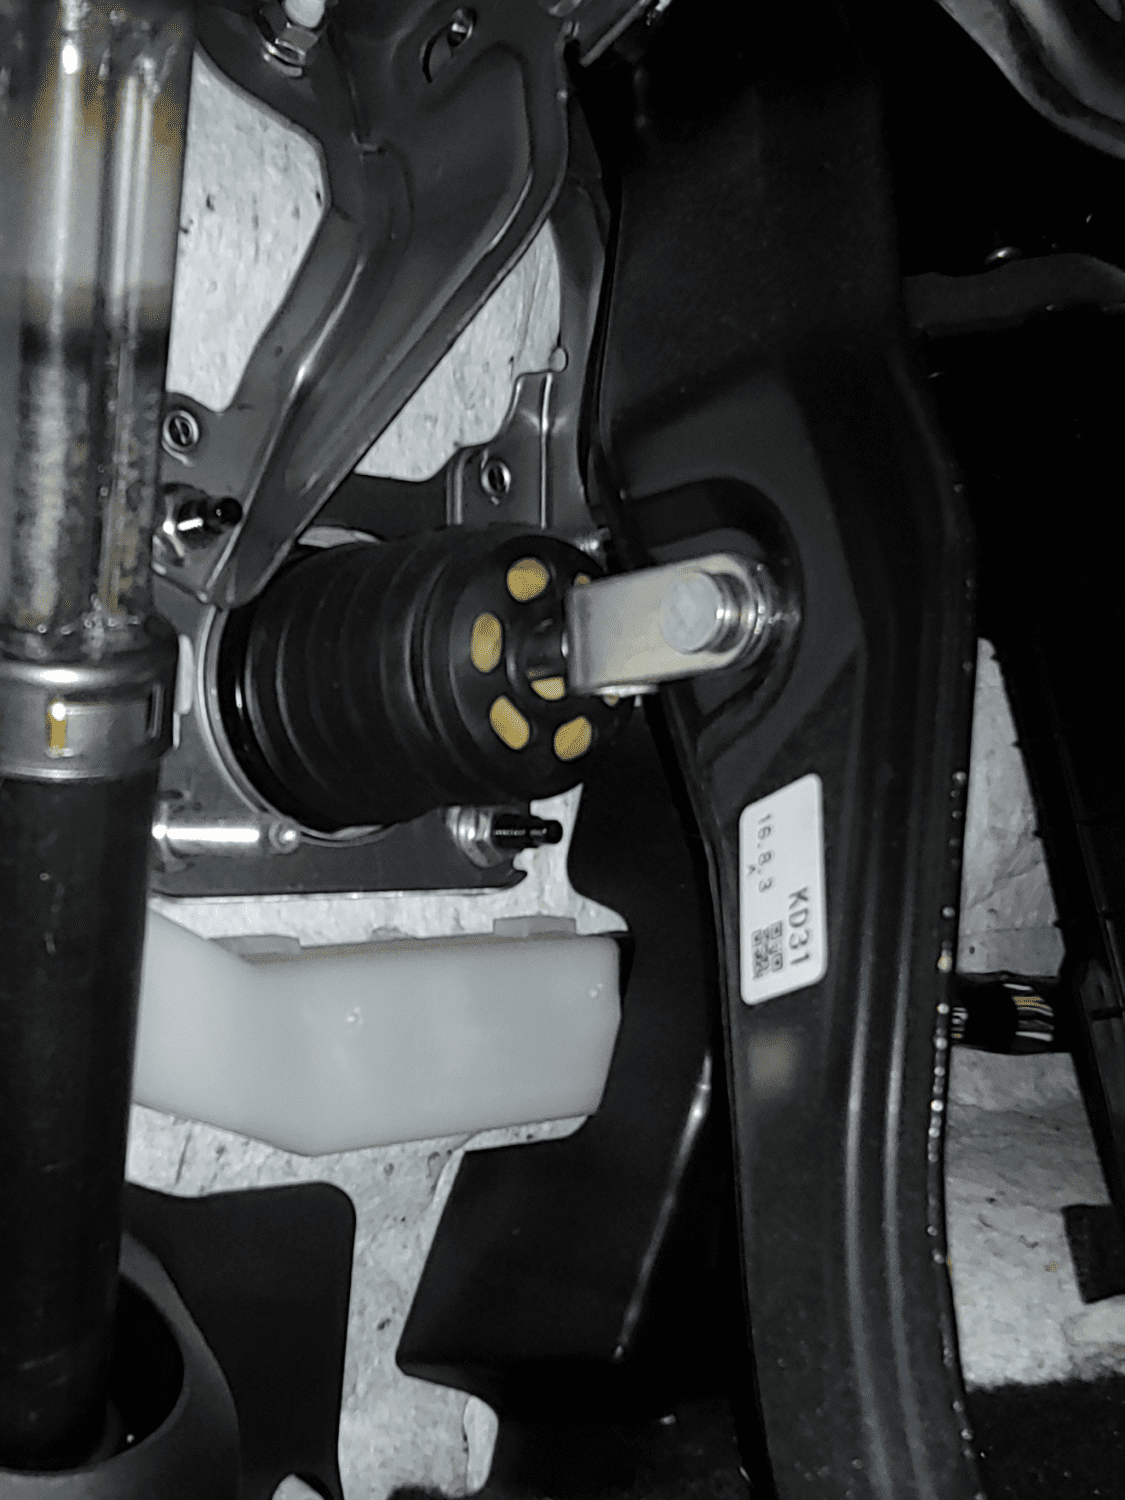 cx5 brake pedal plunger.png